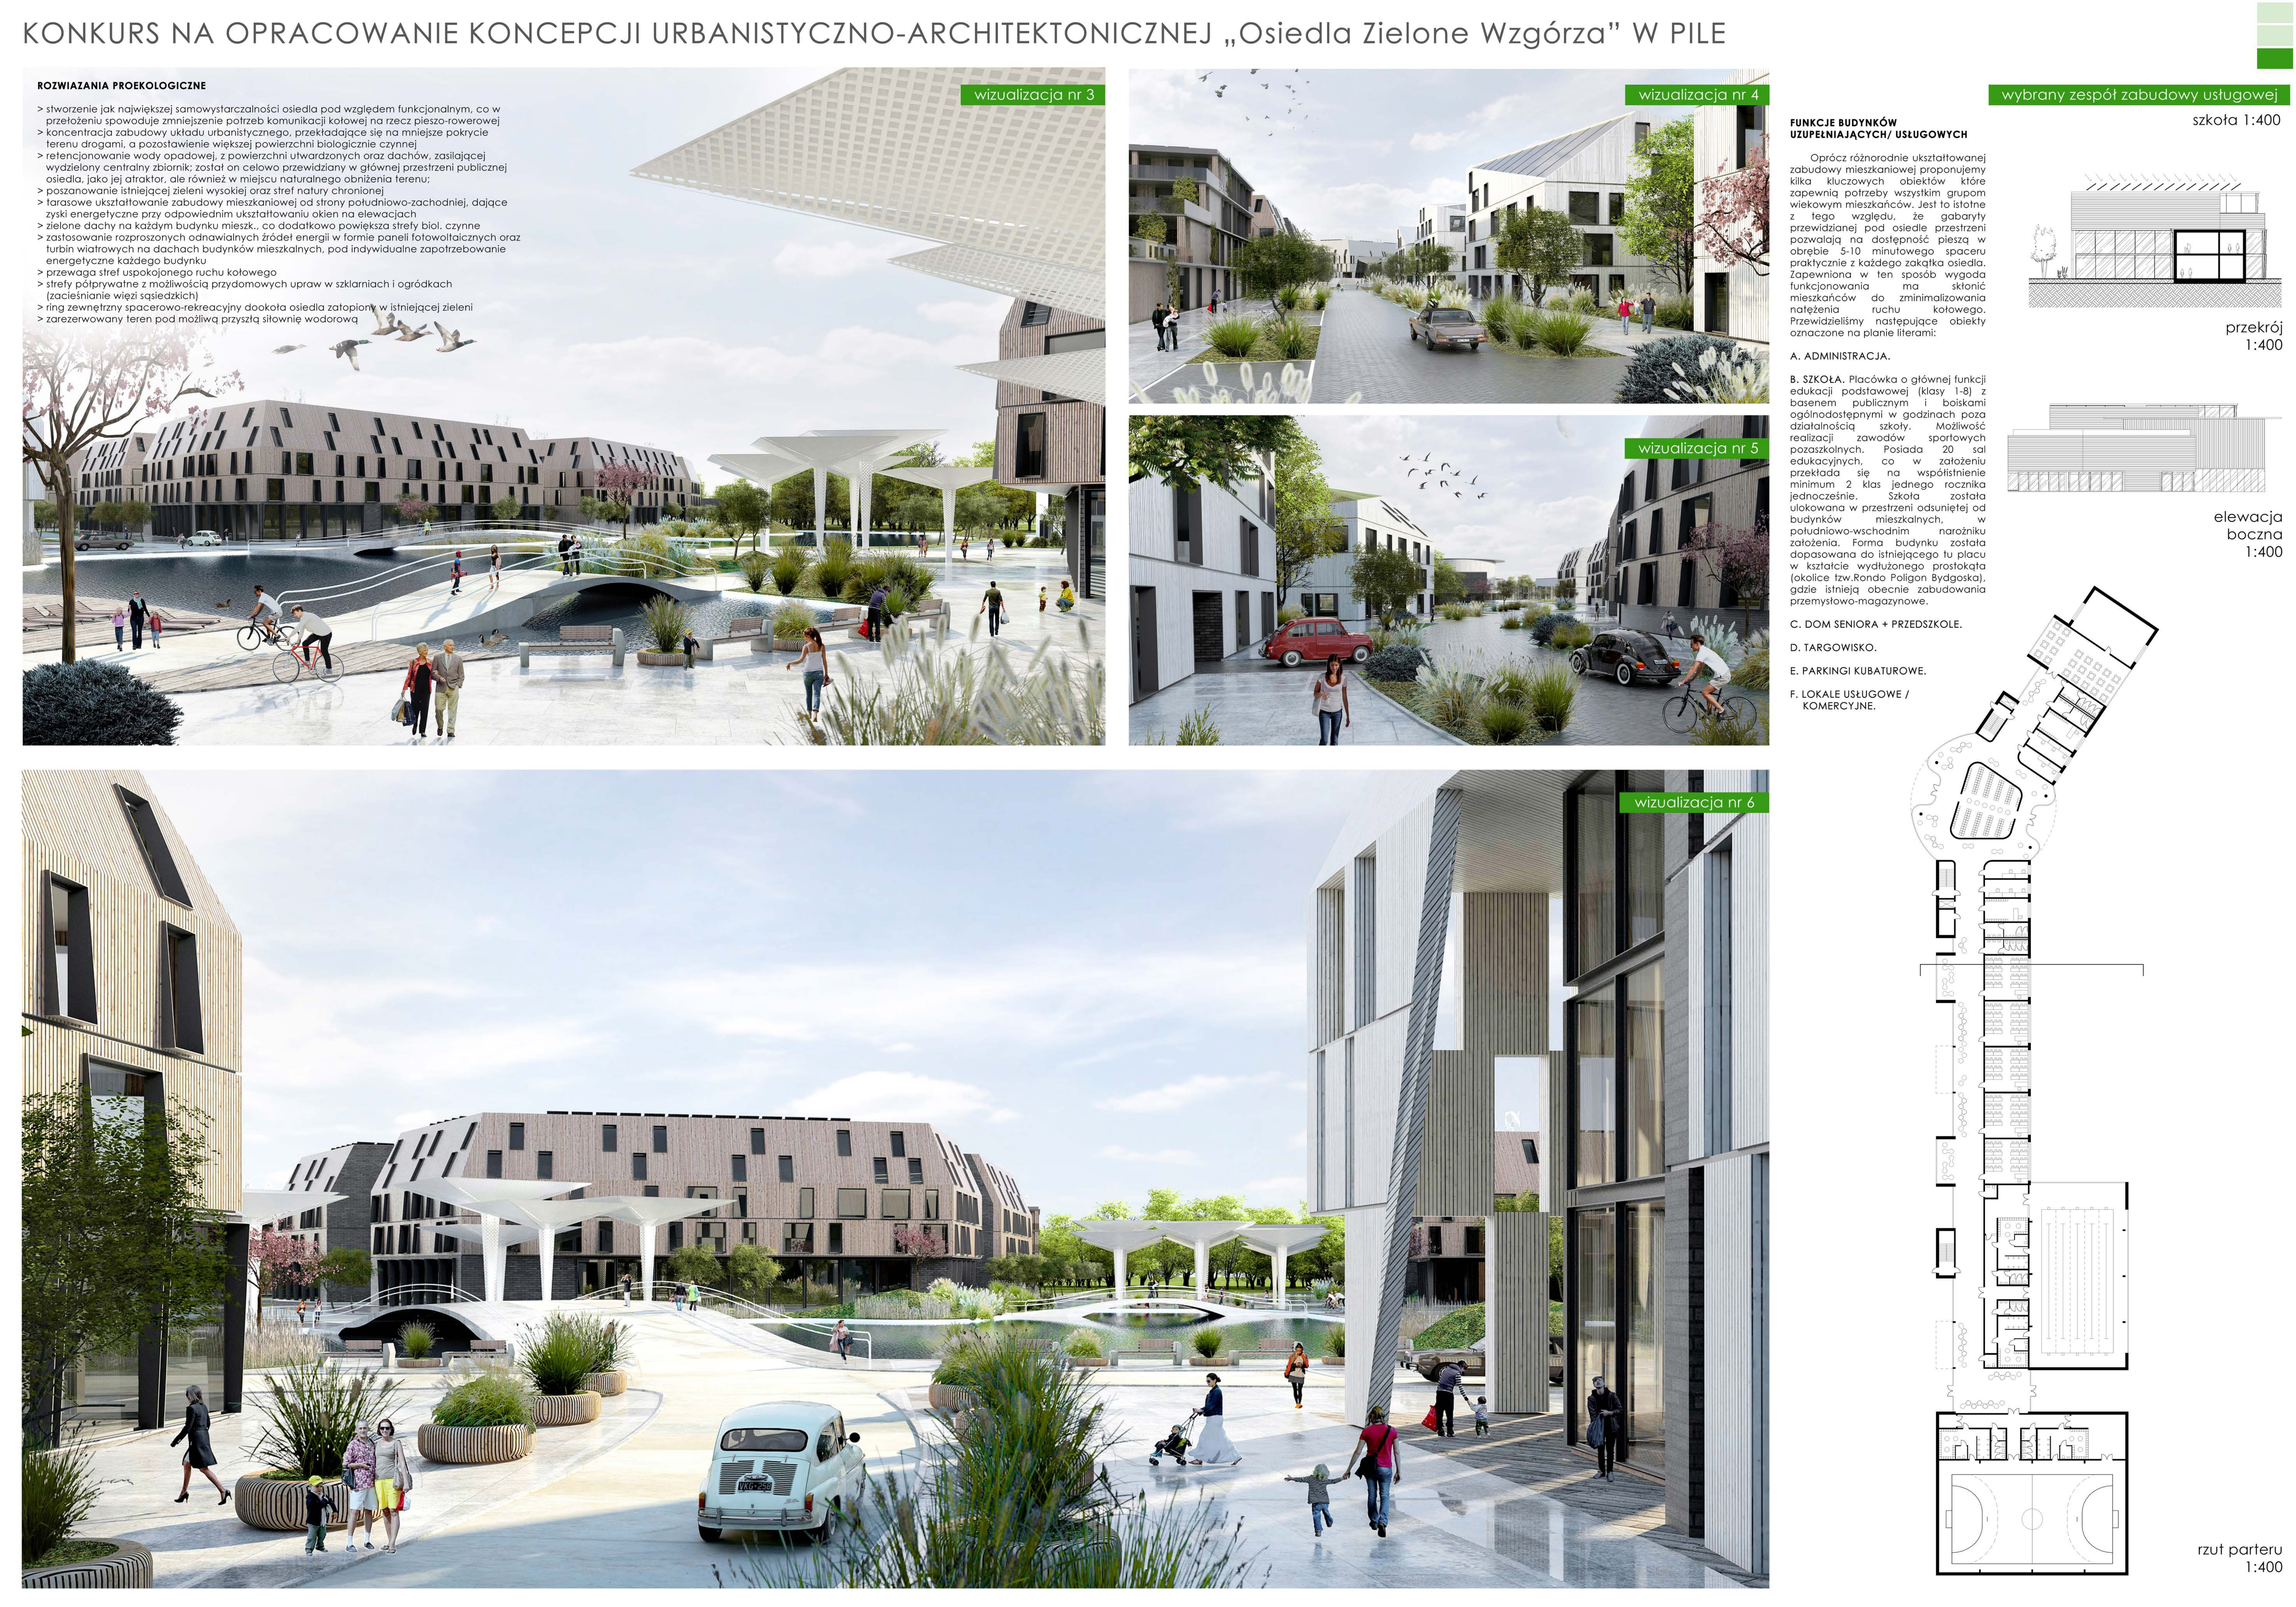 Wizualizacja koncepcji urbanistyczno-architektonicznej osiedla Zielone Wzkórz w Pile.